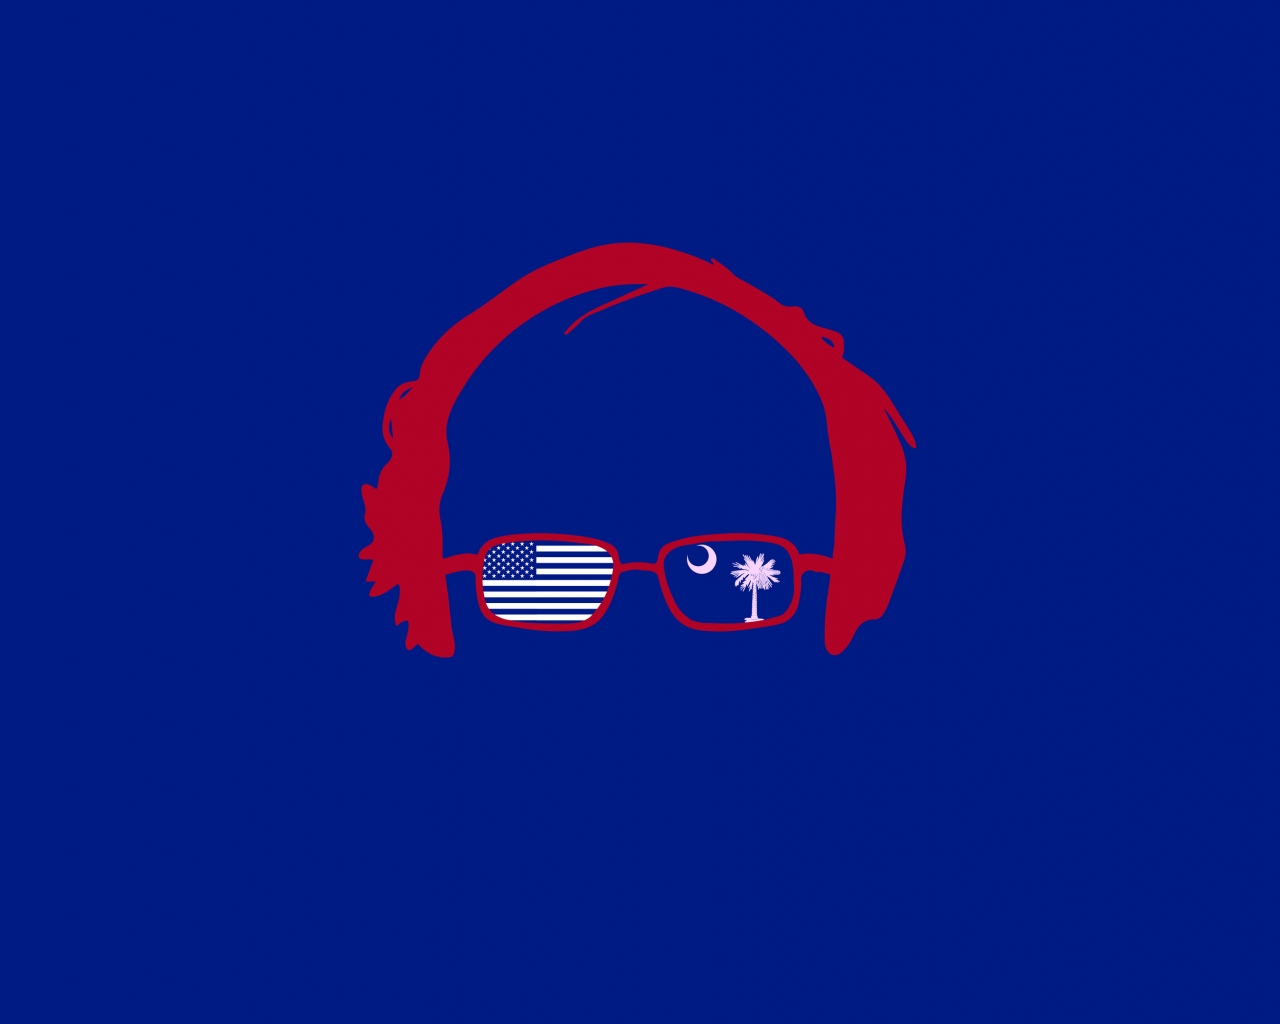 Bernie Sanders Desktop Wallpapers